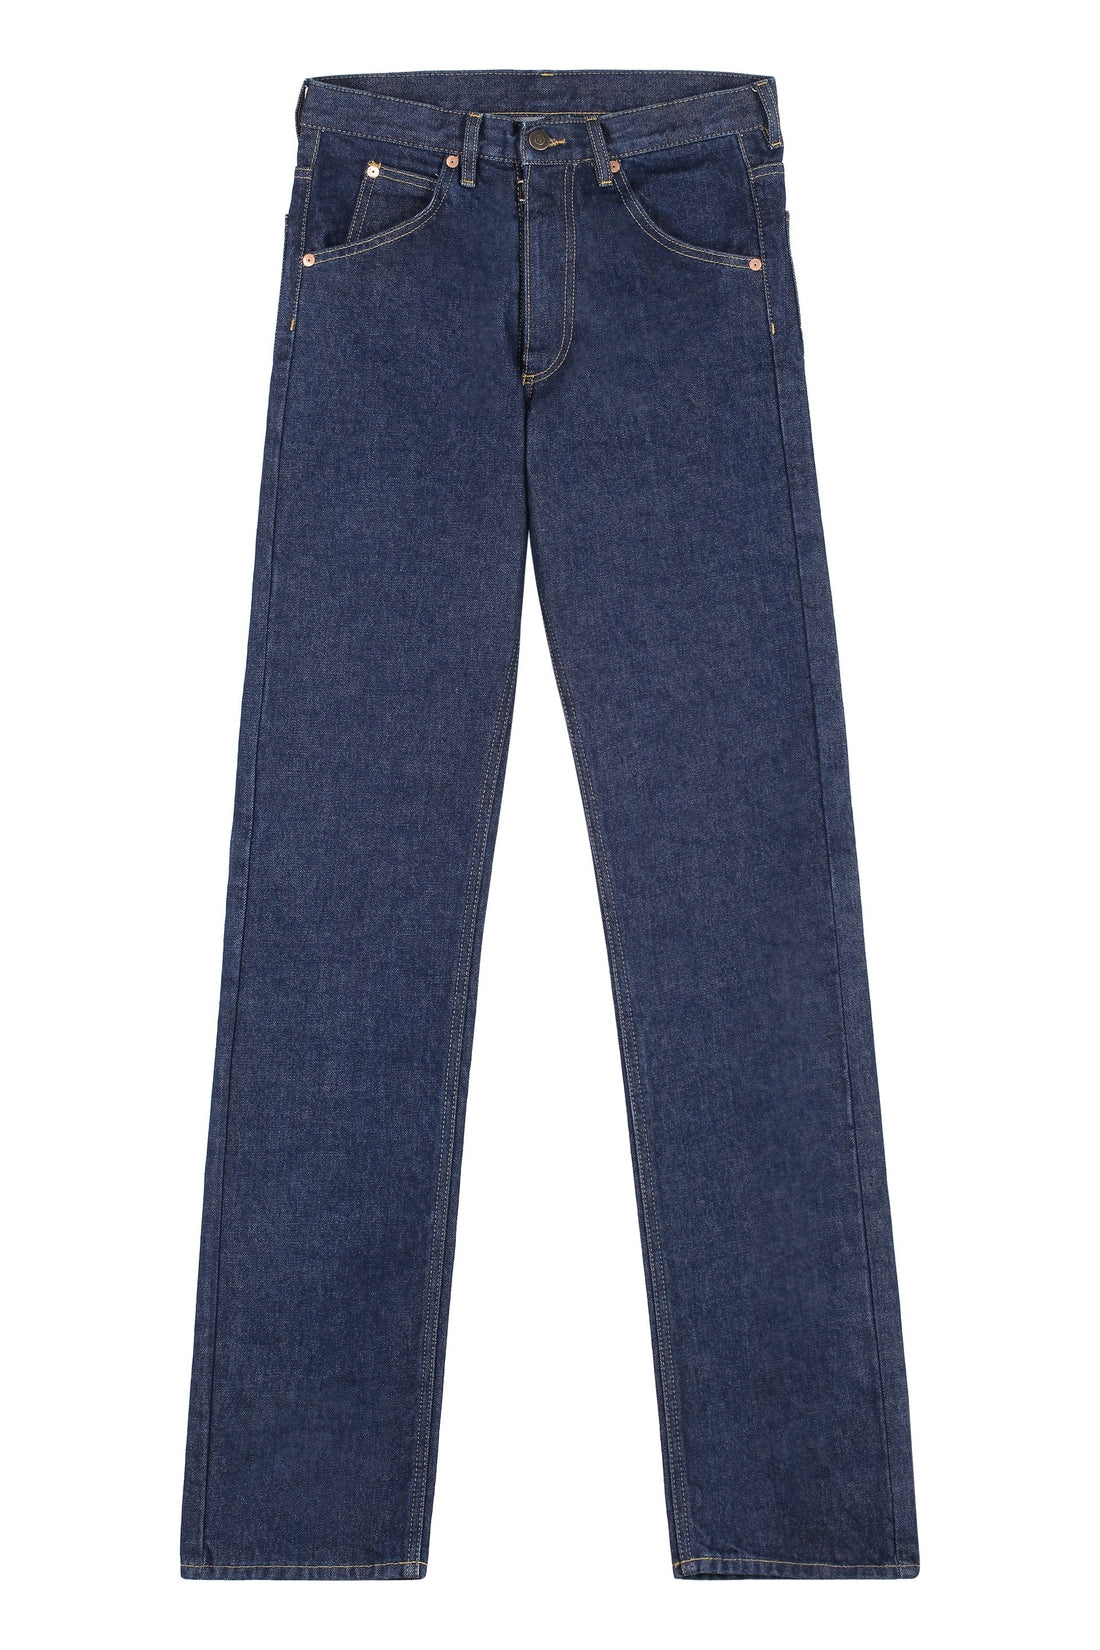 Прямые джинсы с 5 карманами Maison Margiela цена и фото